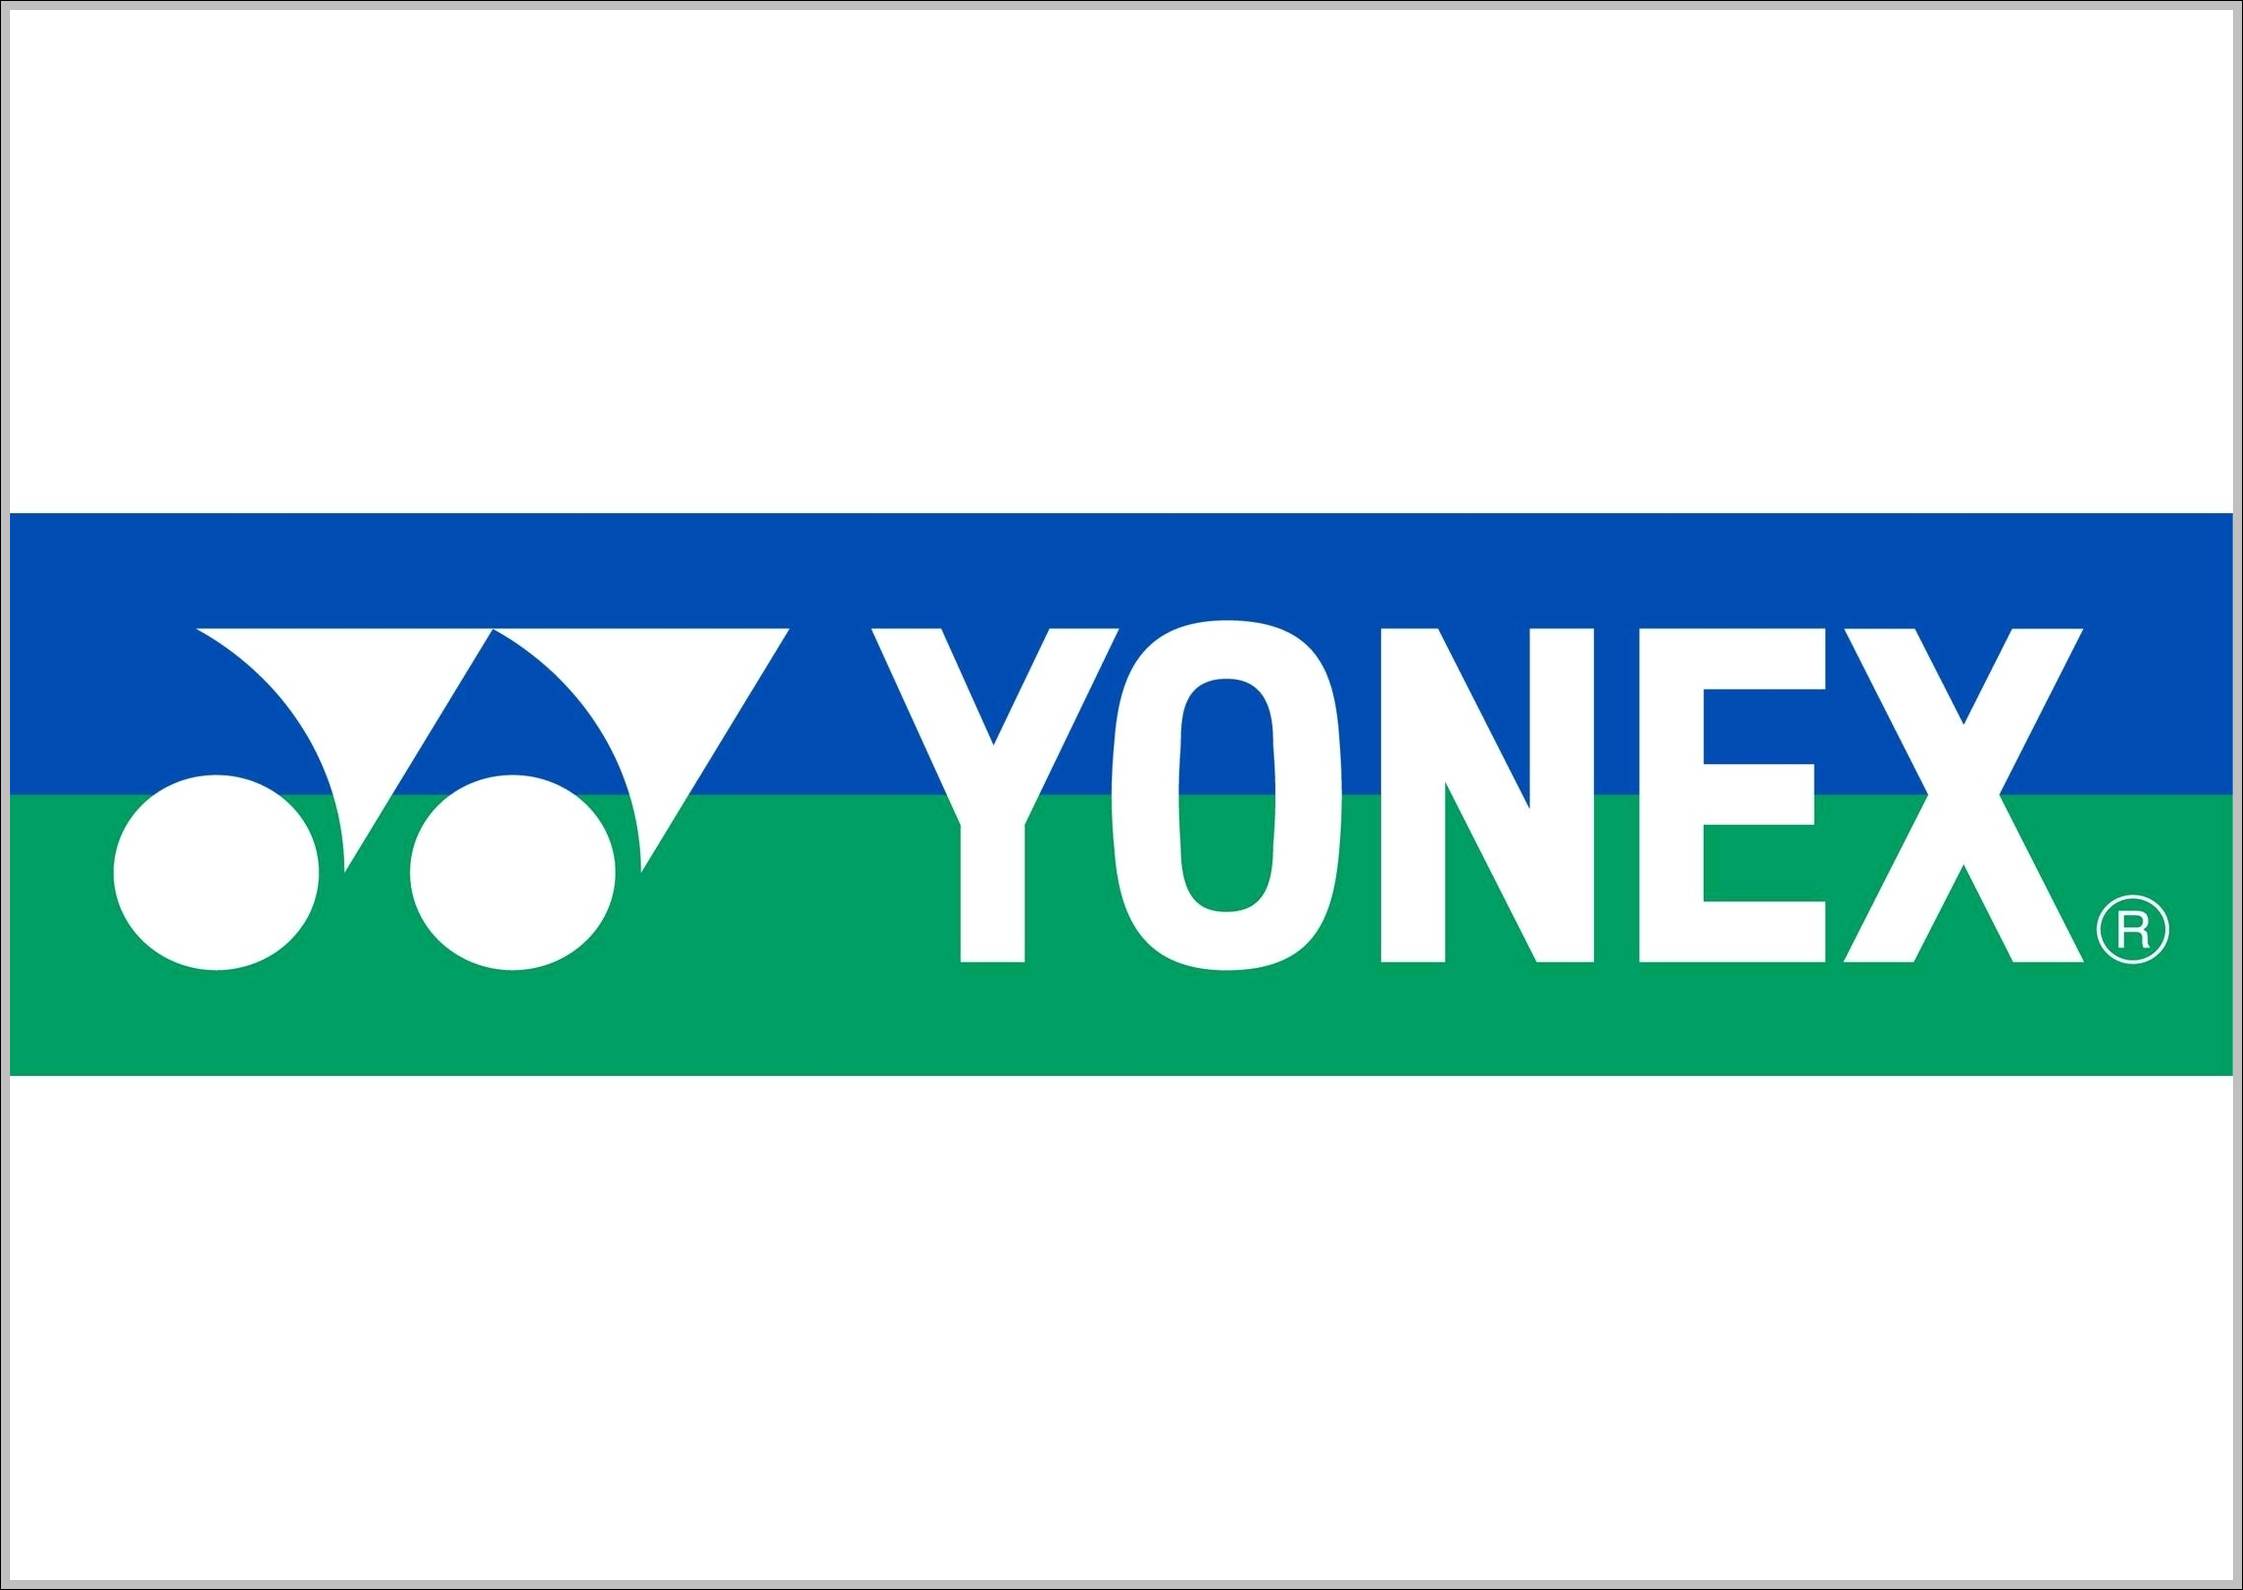 Yonex logo blue green